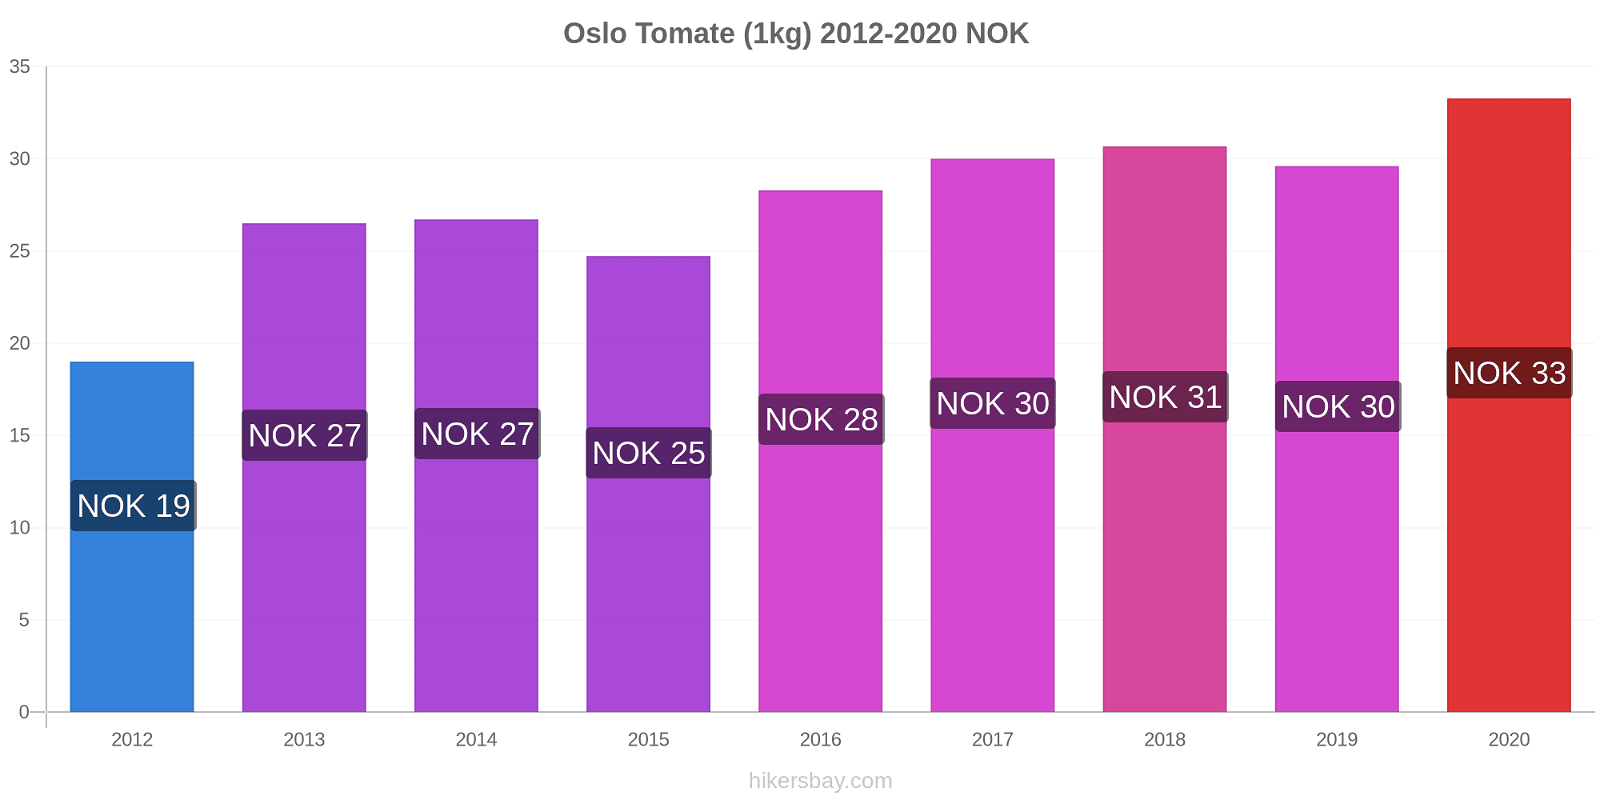 Oslo changements de prix Tomate (1kg) hikersbay.com